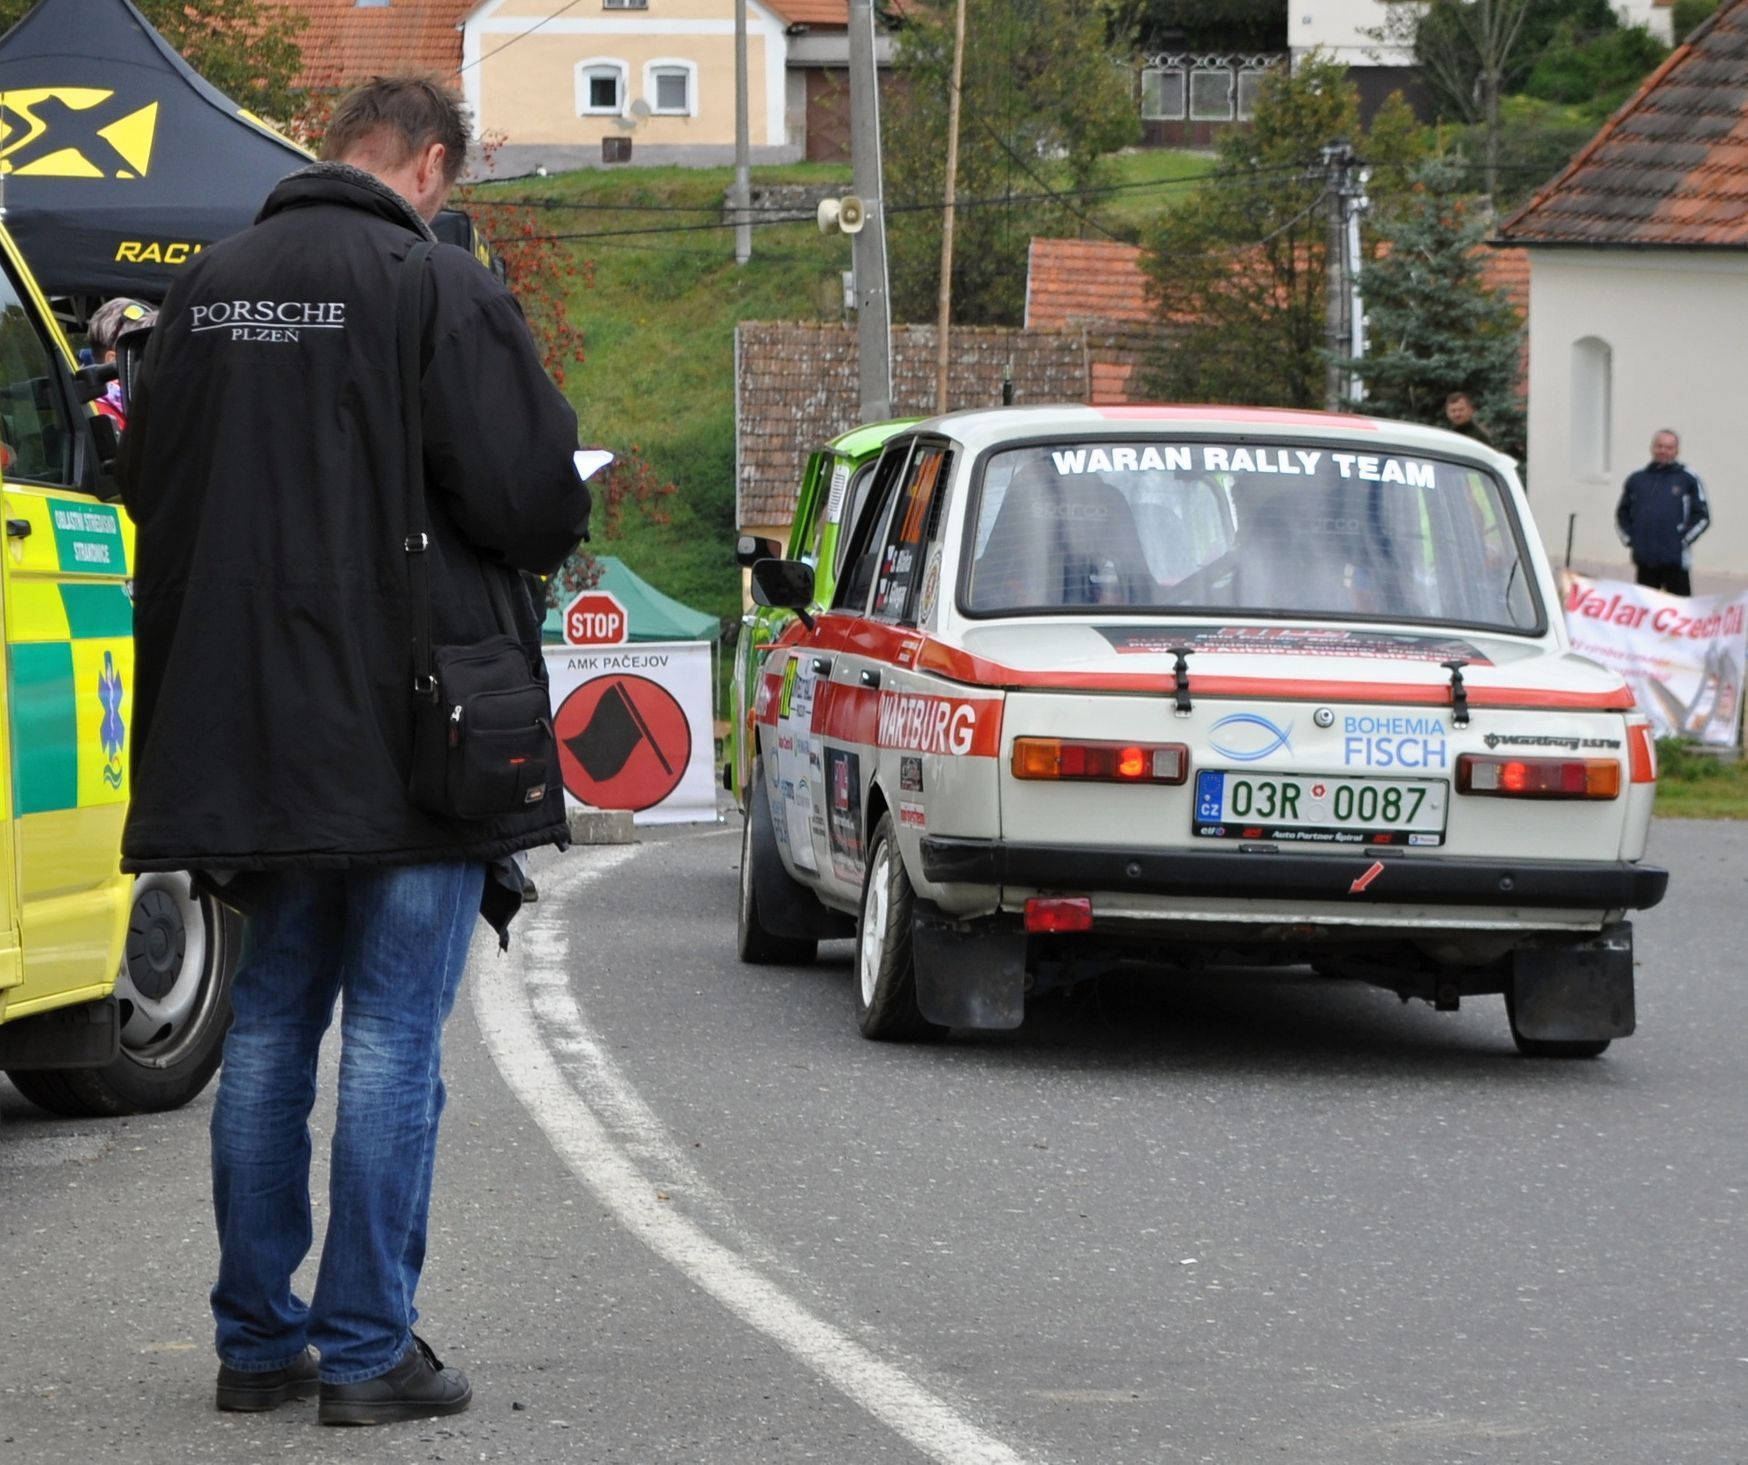 Rallye Pačejov 2020: Wartburg